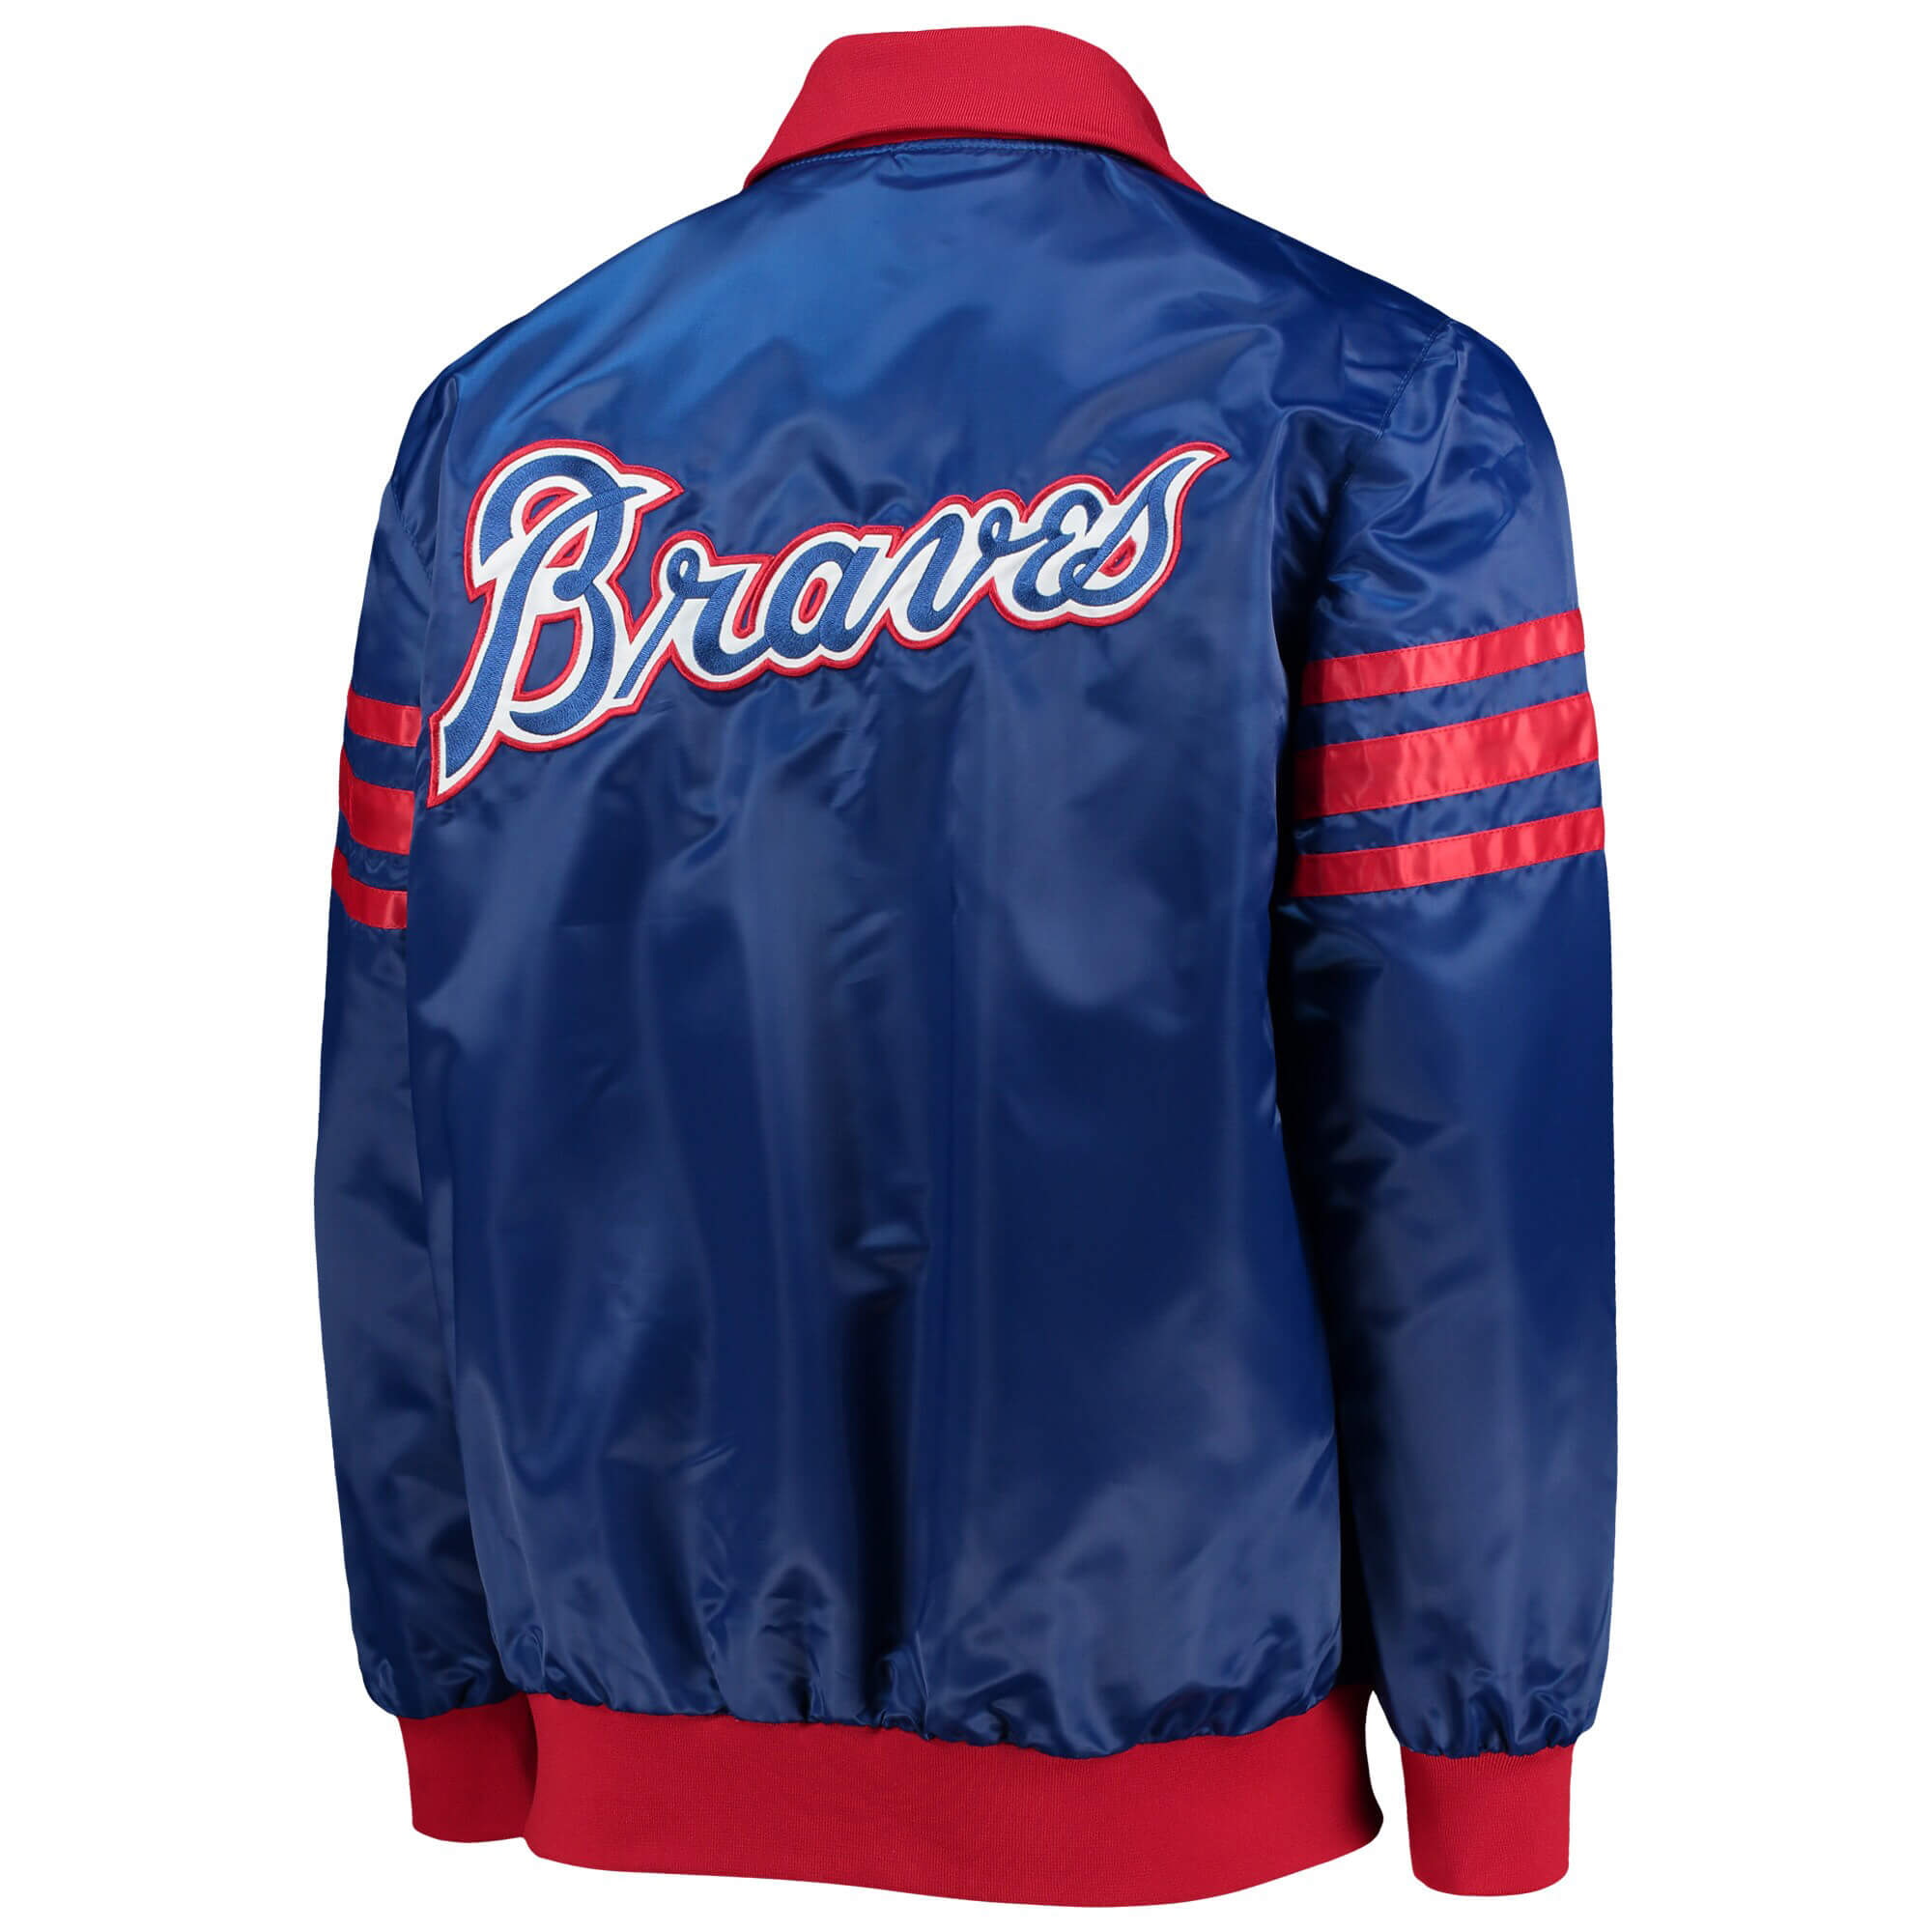 Maker of Jacket MLB Atlanta Braves Navy White Varsity